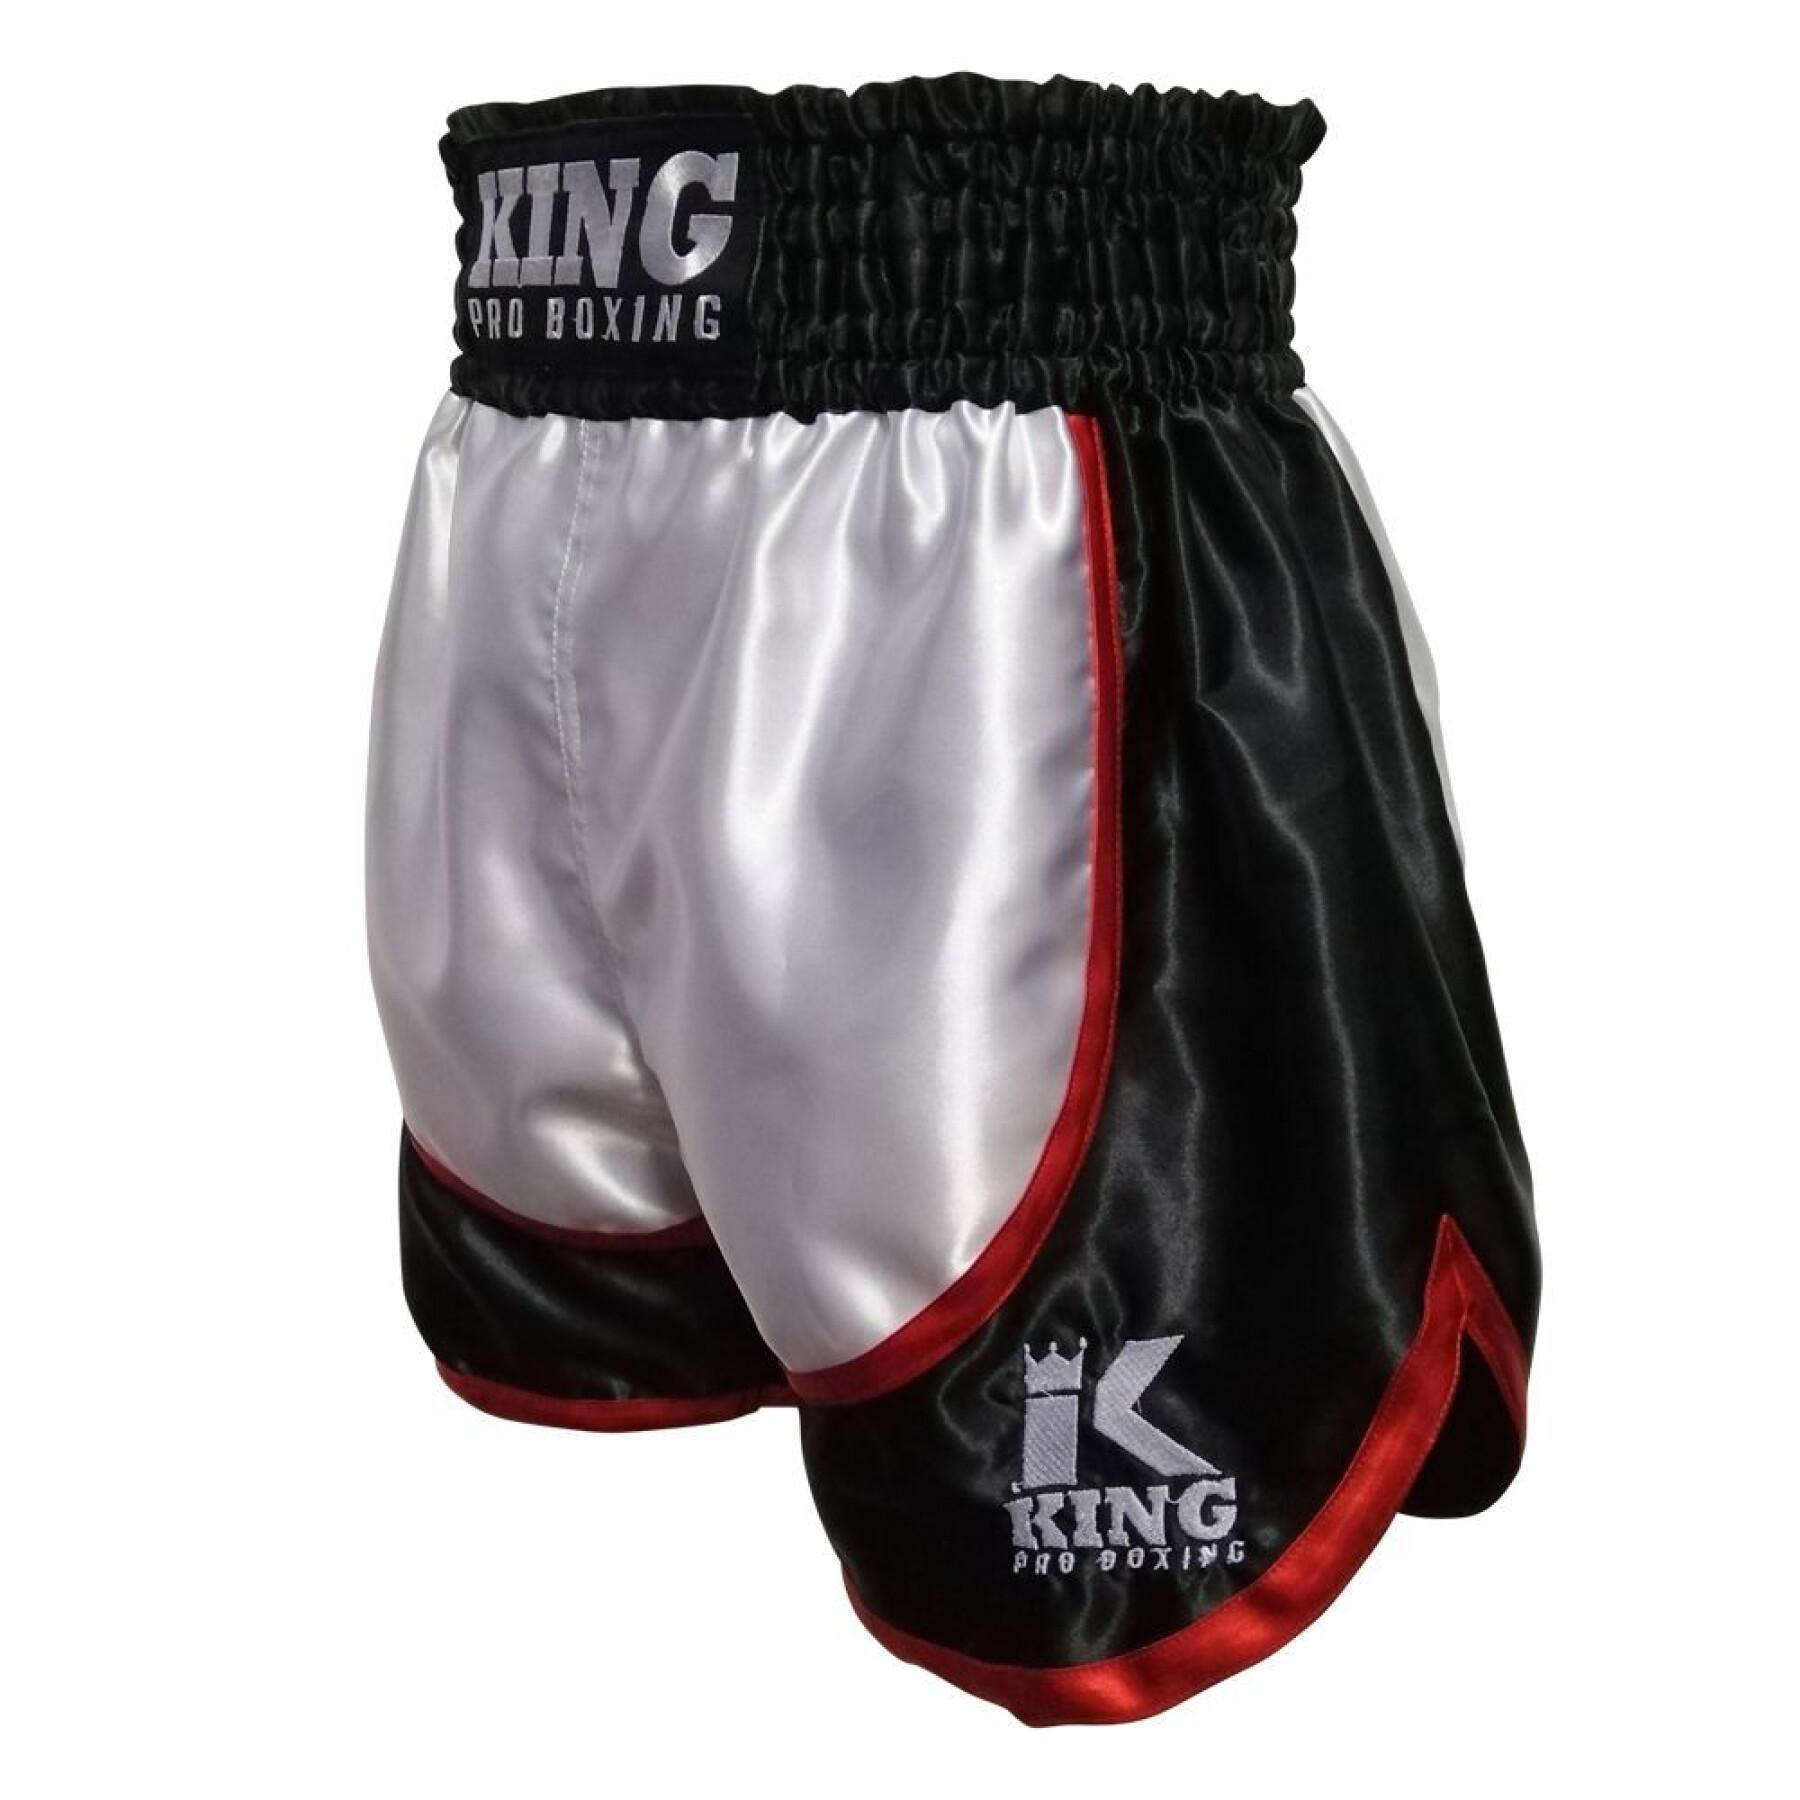 Short de boxe thaï grand logo King Pro Boxing